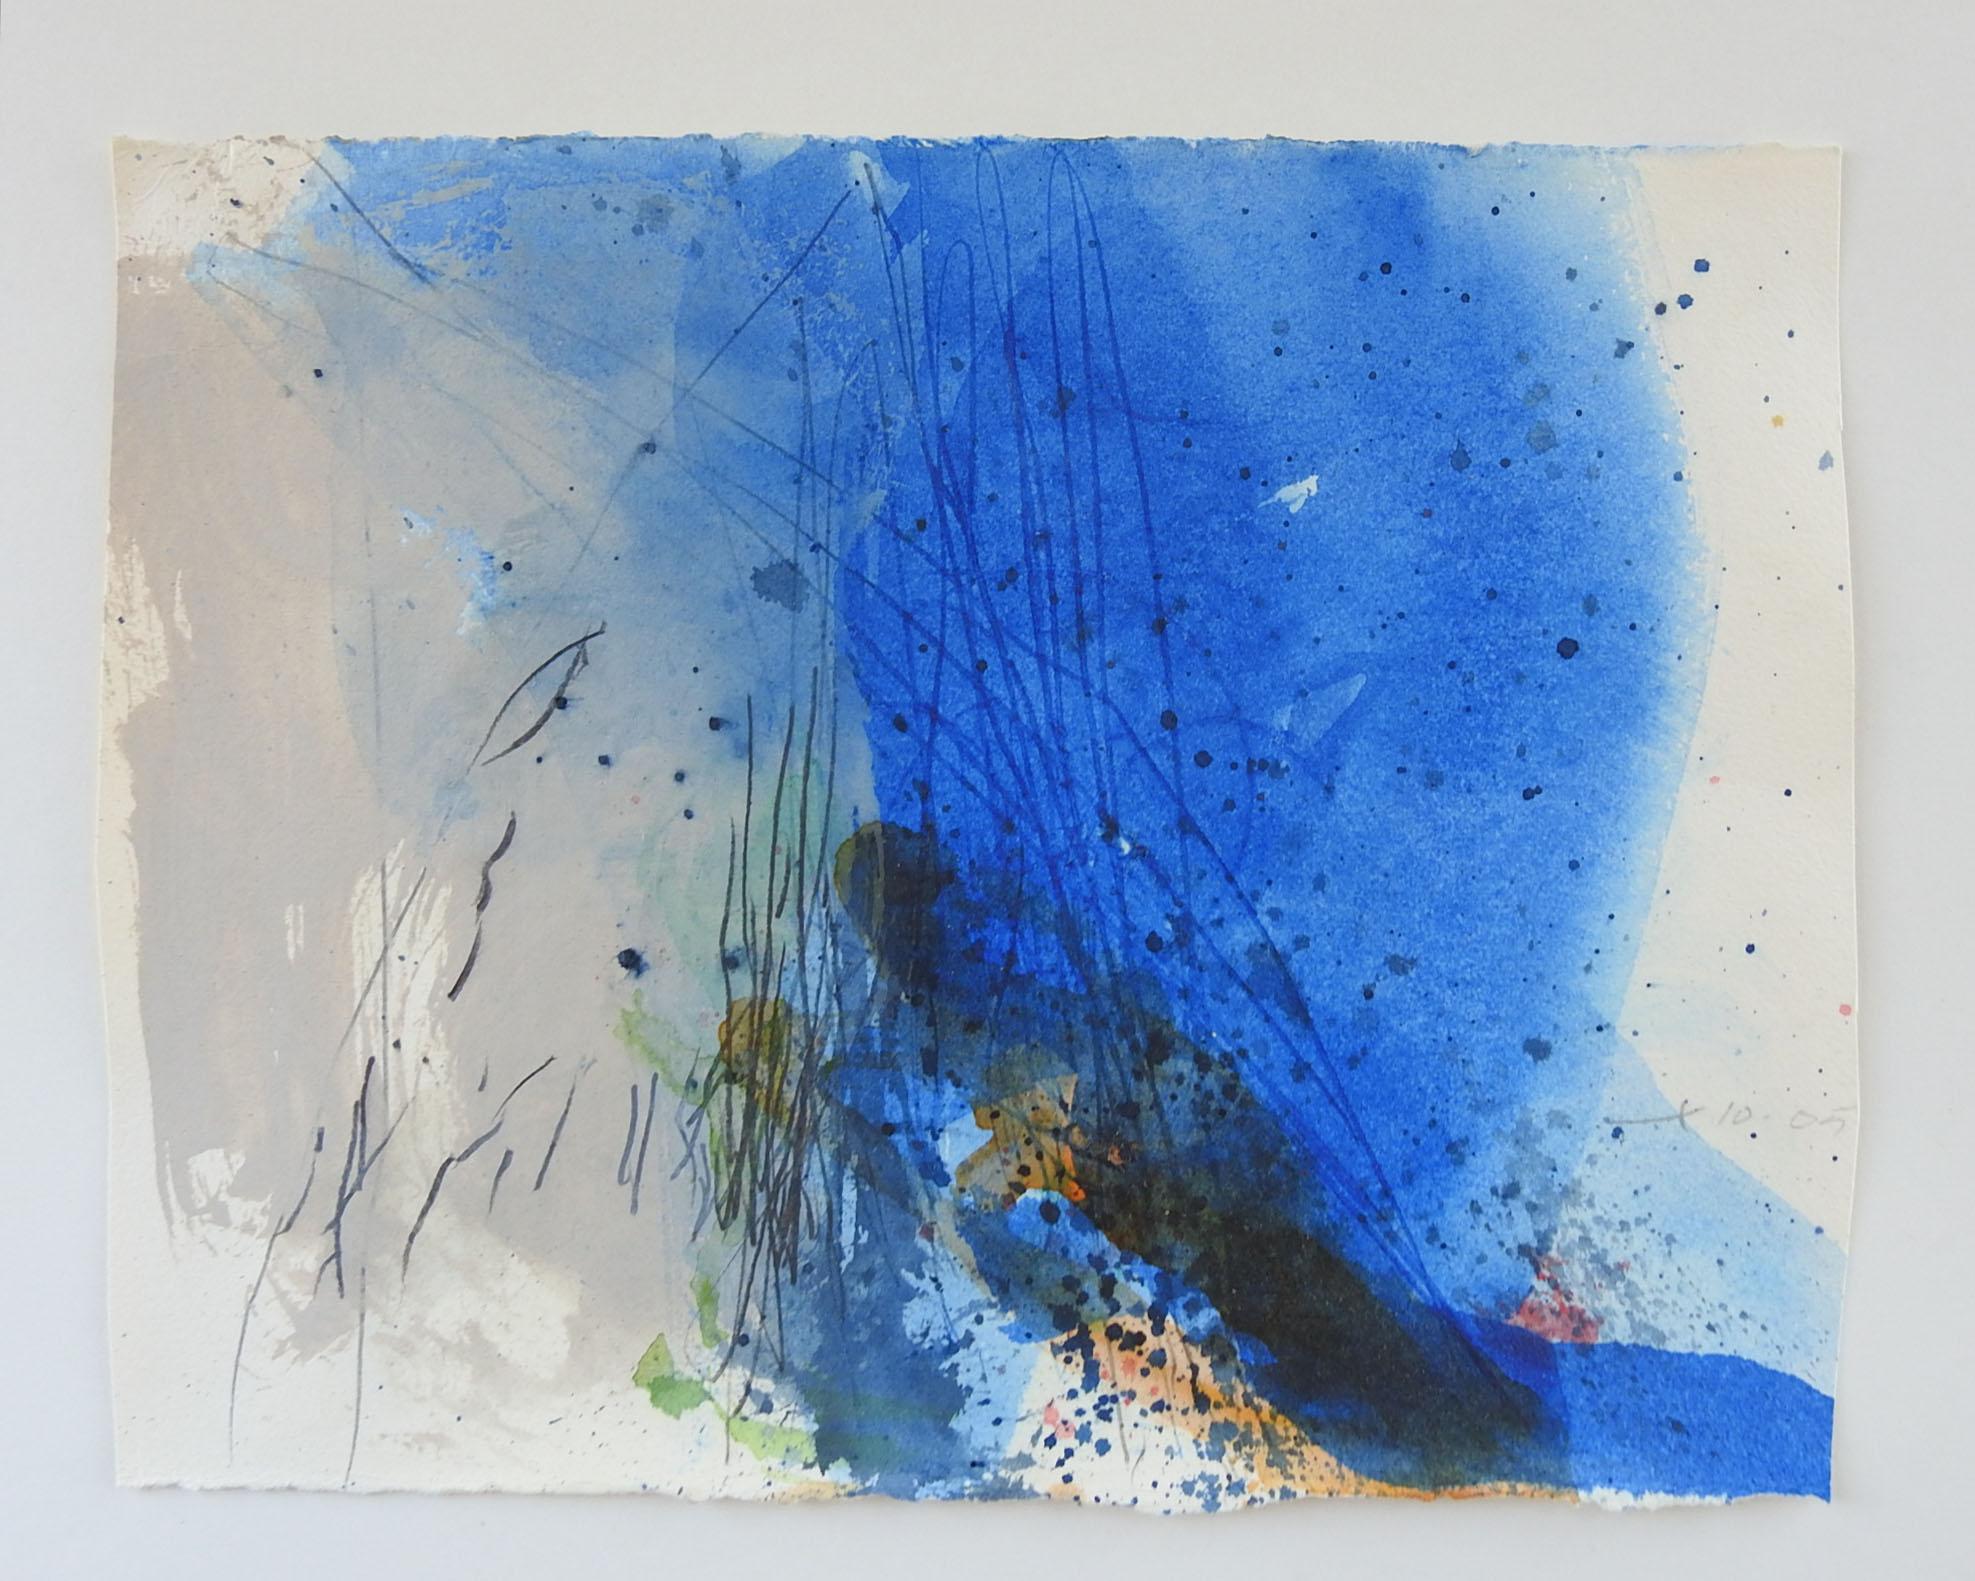 Vintage Aquarell und Mischtechnik abstrakte Malerei von Künstler George Turner ( 1943-2014) Illinois.  auf Aquarellpapier. Das Werk ist in der rechten unteren Ecke mit Bleistift signiert und datiert. Ungerahmt, ungleichmäßiger Randbeschnitt.